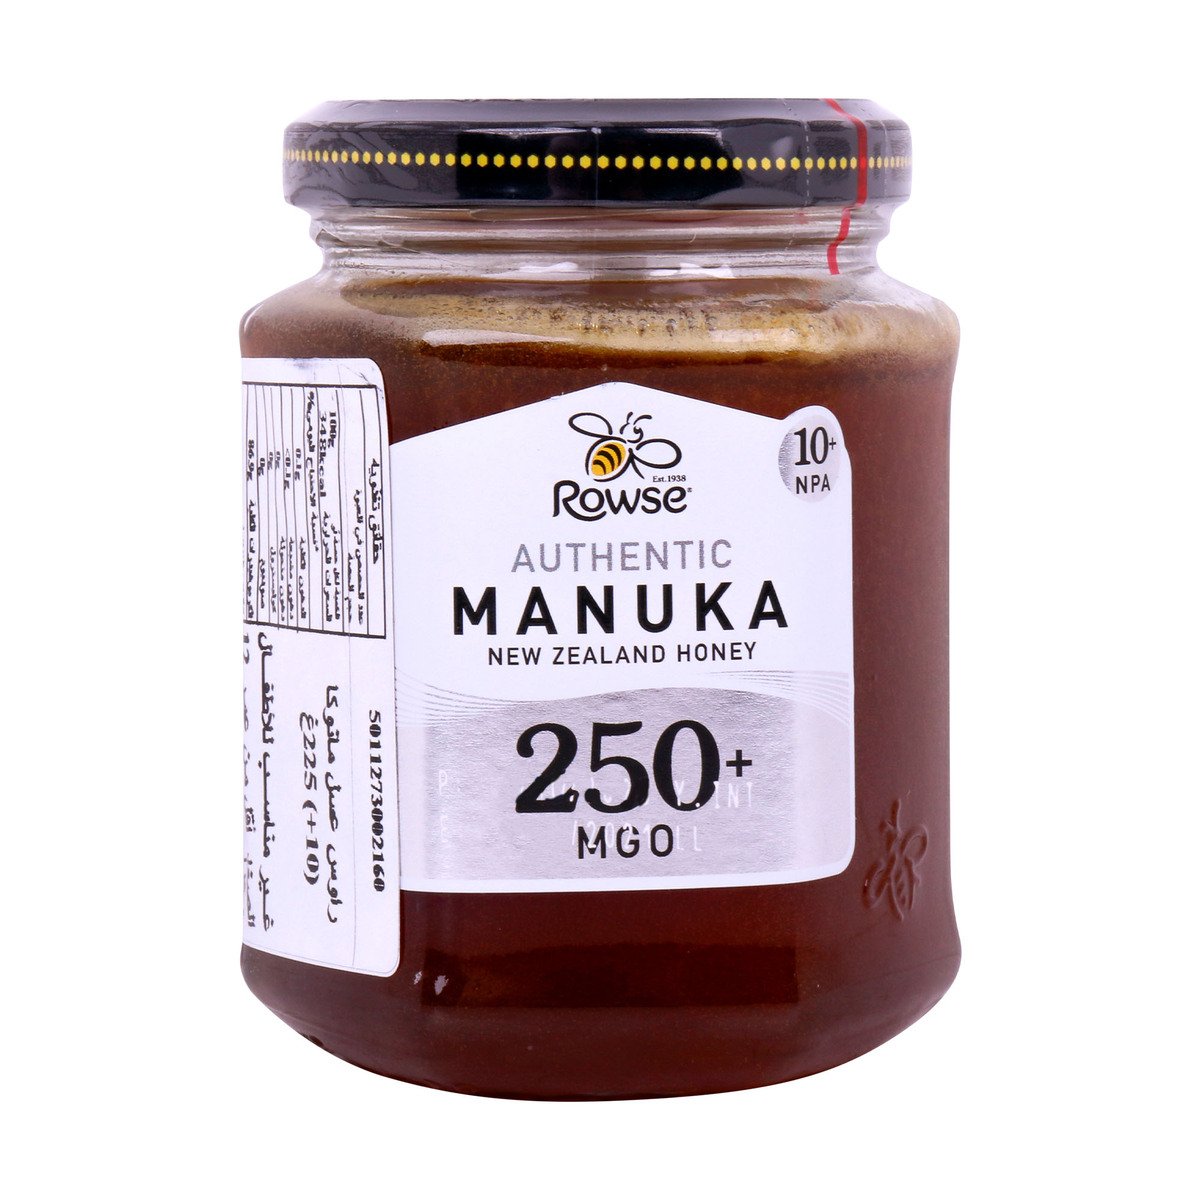 Rowse Authentic Manuka Honey 250+ MGO 225g